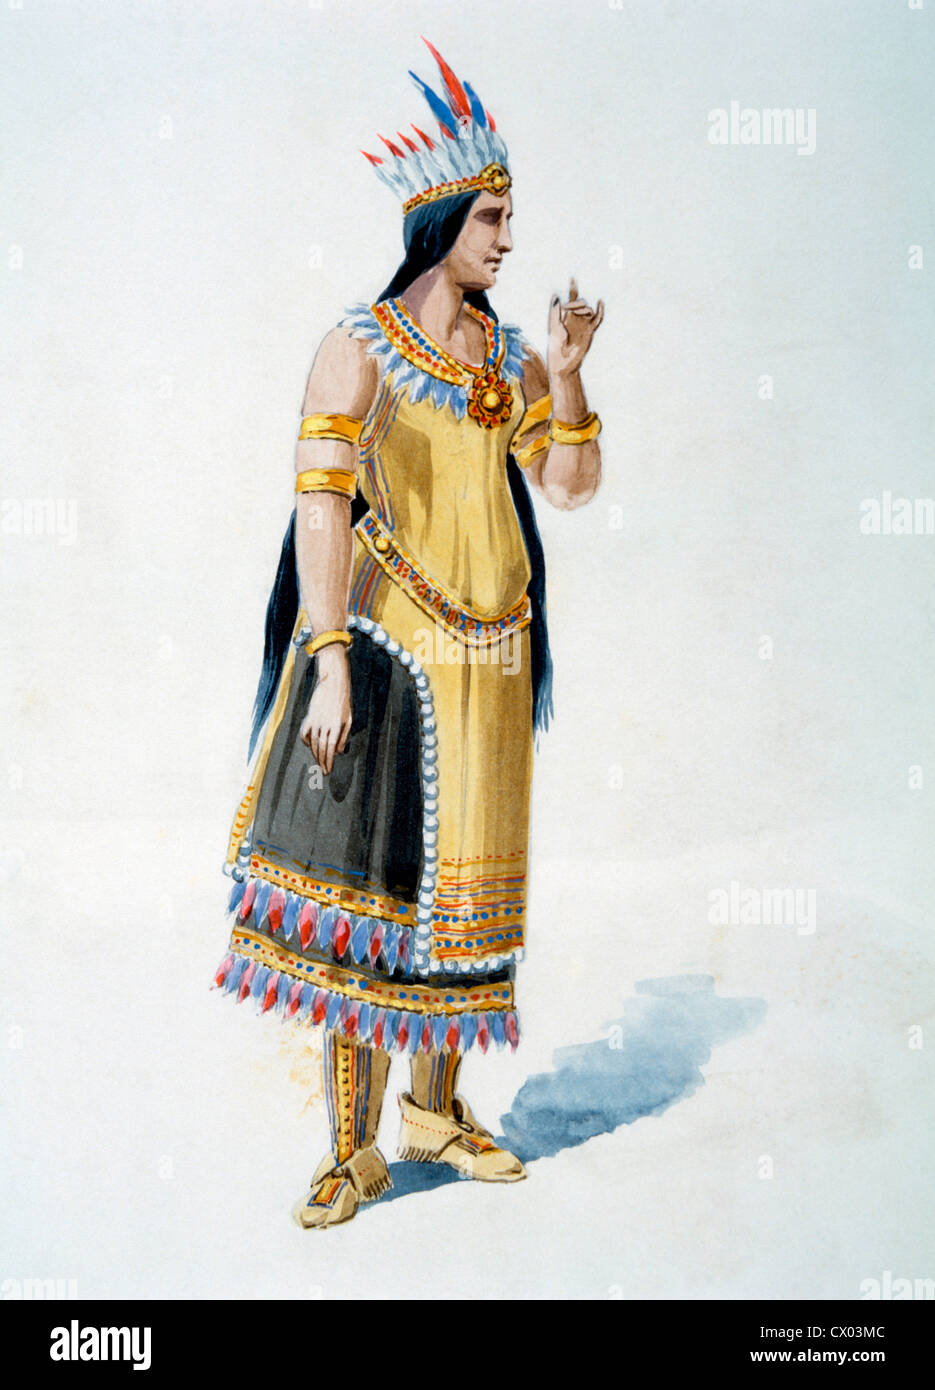 Ehefrau von indianischen Häuptling, Aquarell Gemälde von William L. Wells für die Columbian Exposition Festzug, 1892 Stockfoto